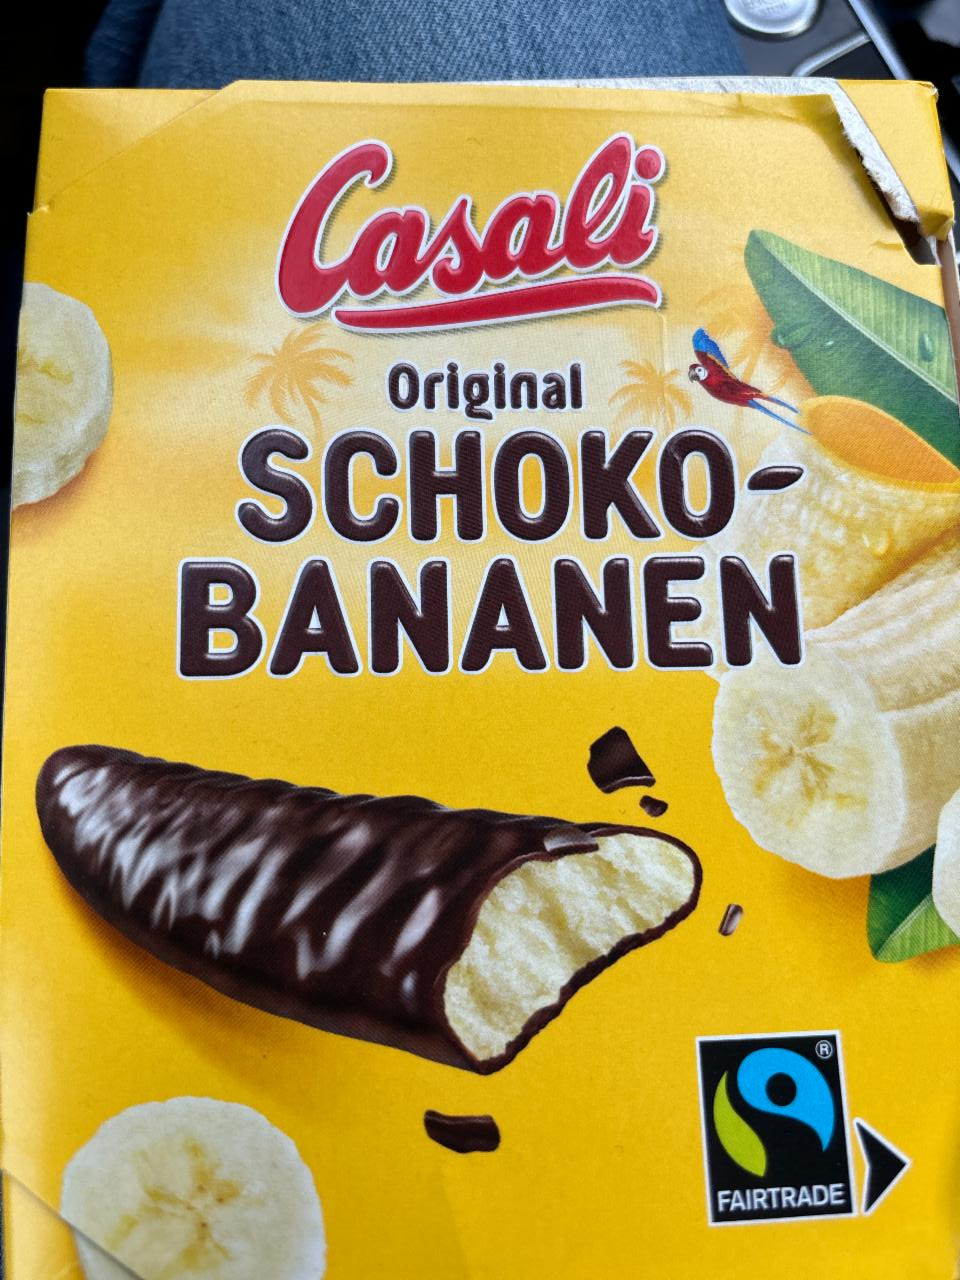 Fotografie - Original schoko-bananen Casali